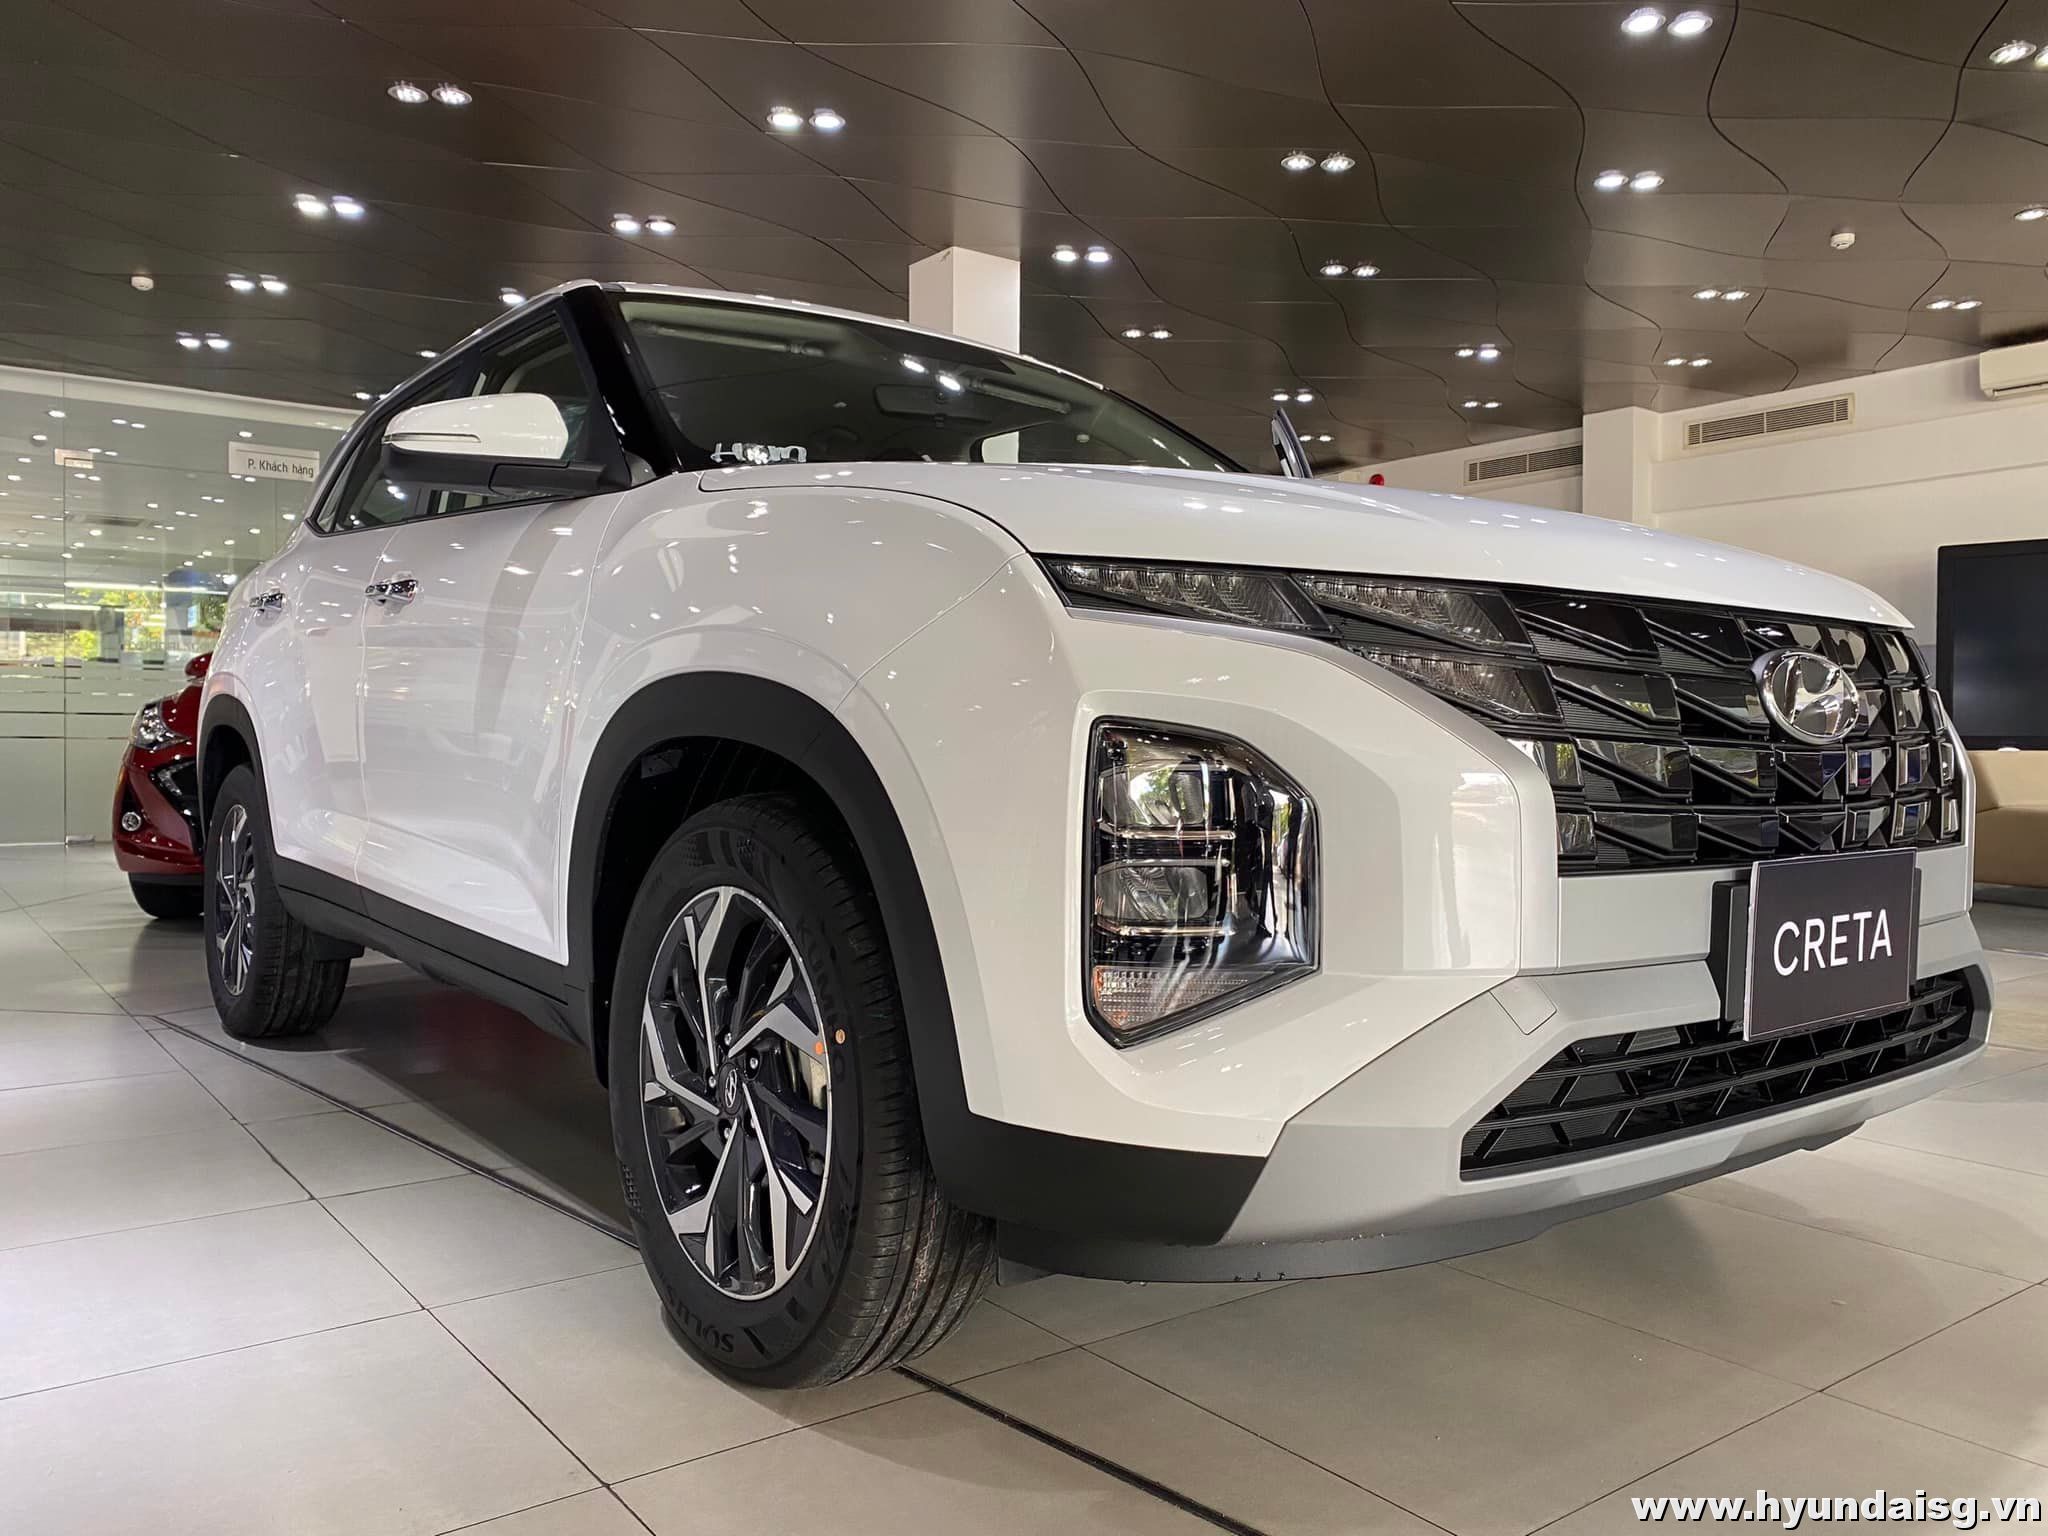 Khám phá chiếc Hyundai Creta 2022 màu trắng sang trọng và hiện đại nhất. Hình ảnh sẽ đưa bạn đi qua từng chi tiết thiết kế hoàn hảo của xe, mang đến cho bạn trải nghiệm thực tế.